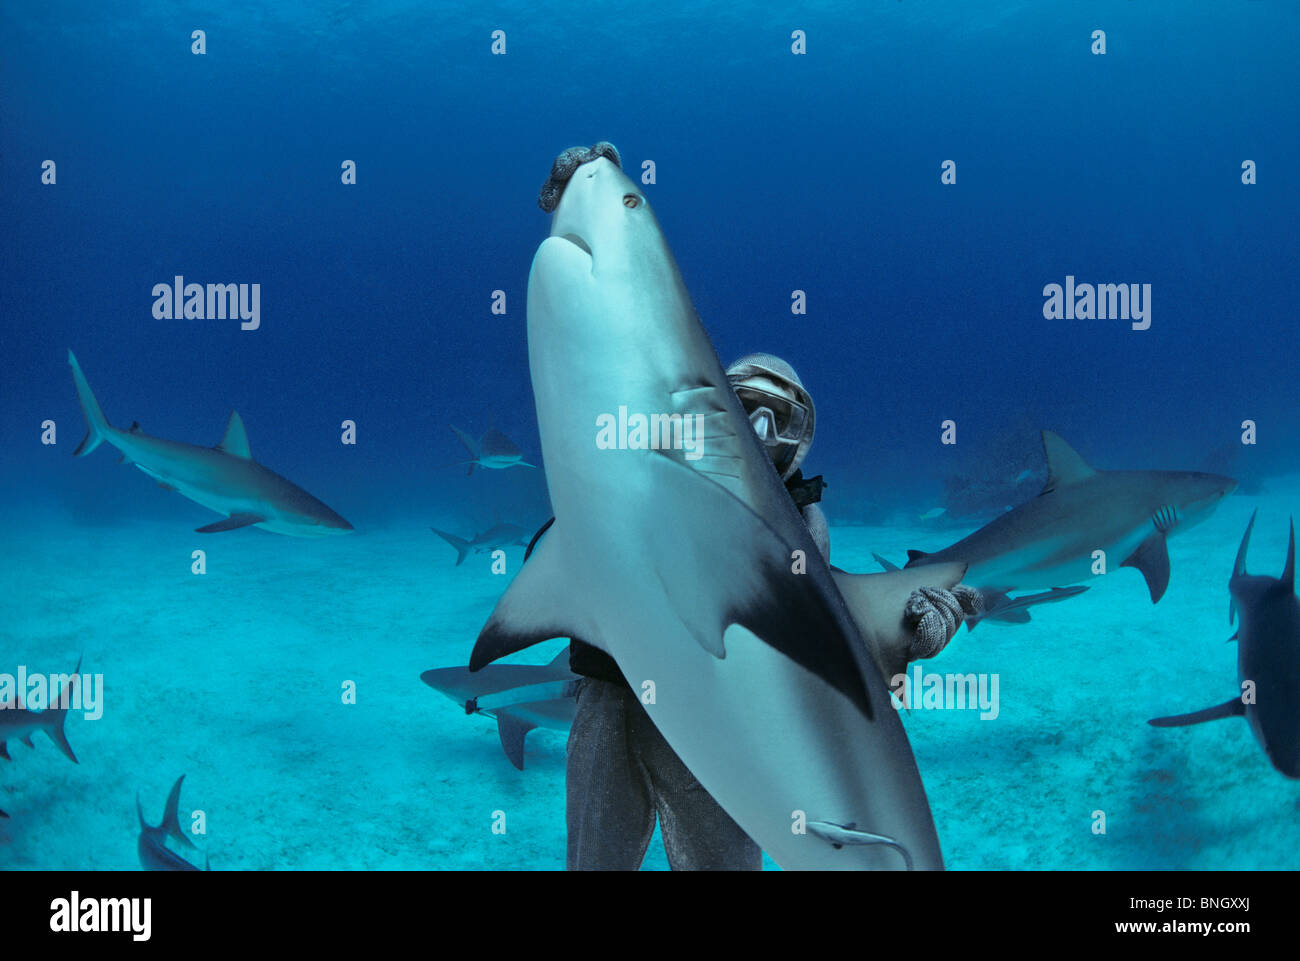 Karibischen Riffhai (Carcharhinus Perezi) in hypnotische Trance von Hai Handler, Bahamas - Karibik aufgehoben wird. Stockfoto